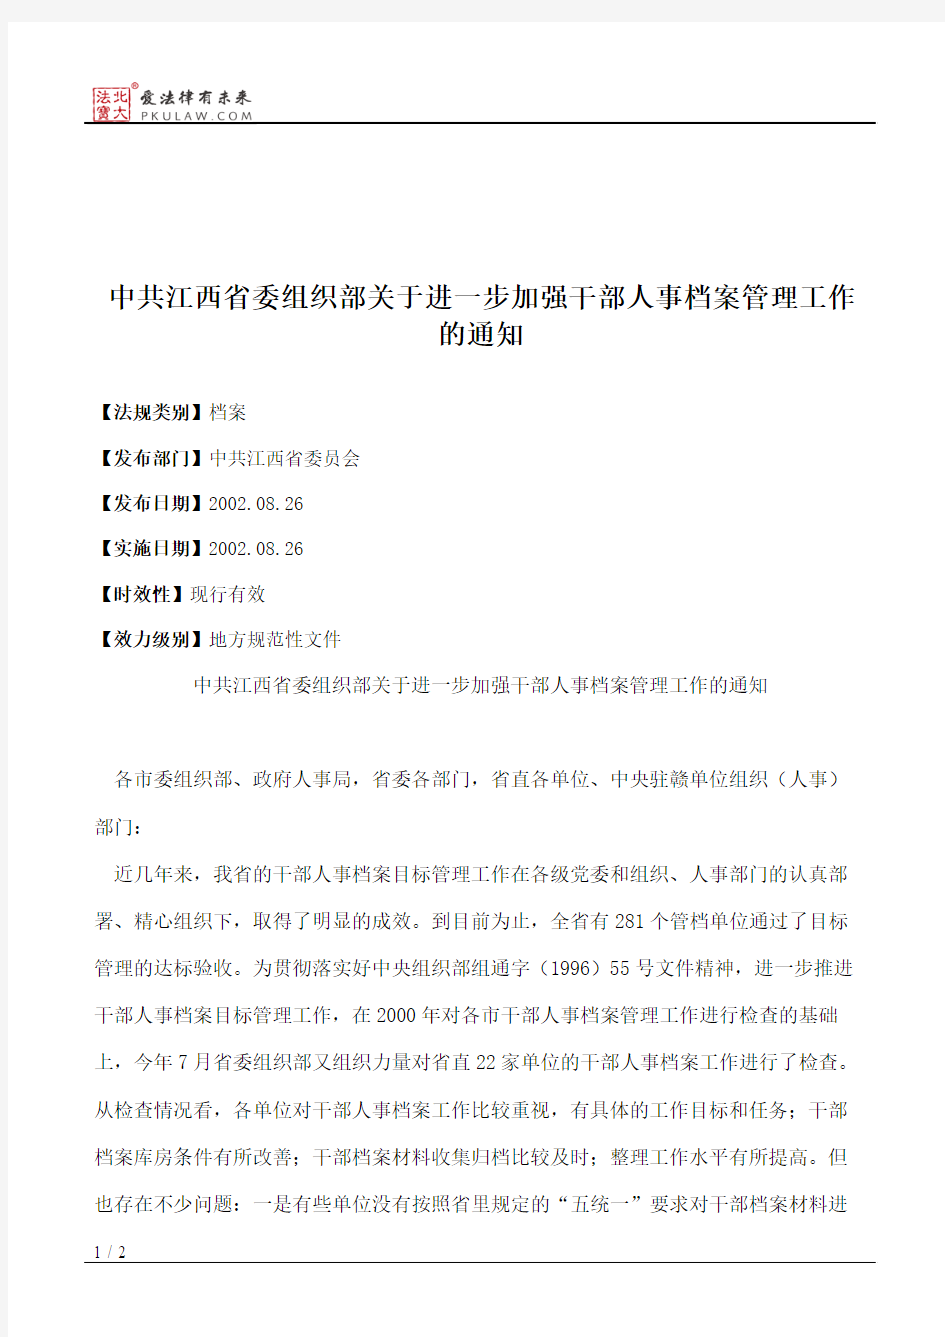 中共江西省委组织部关于进一步加强干部人事档案管理工作的通知